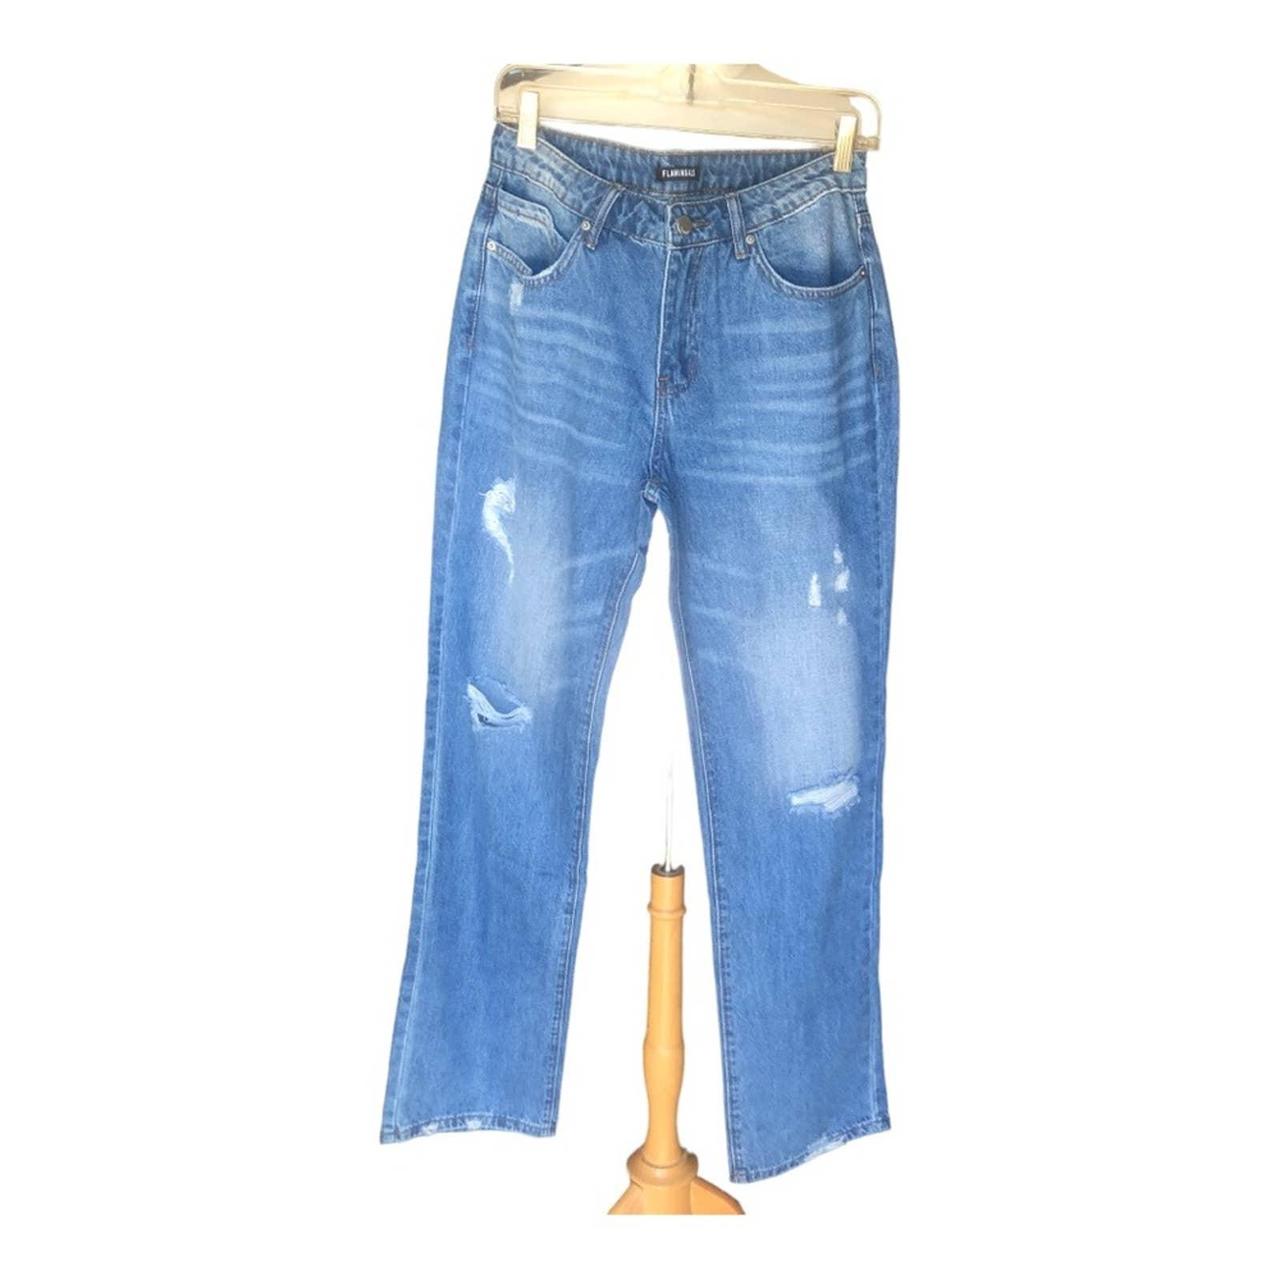 Flamingo Jeans Straight Leg - Med Blue Wash -... - Depop